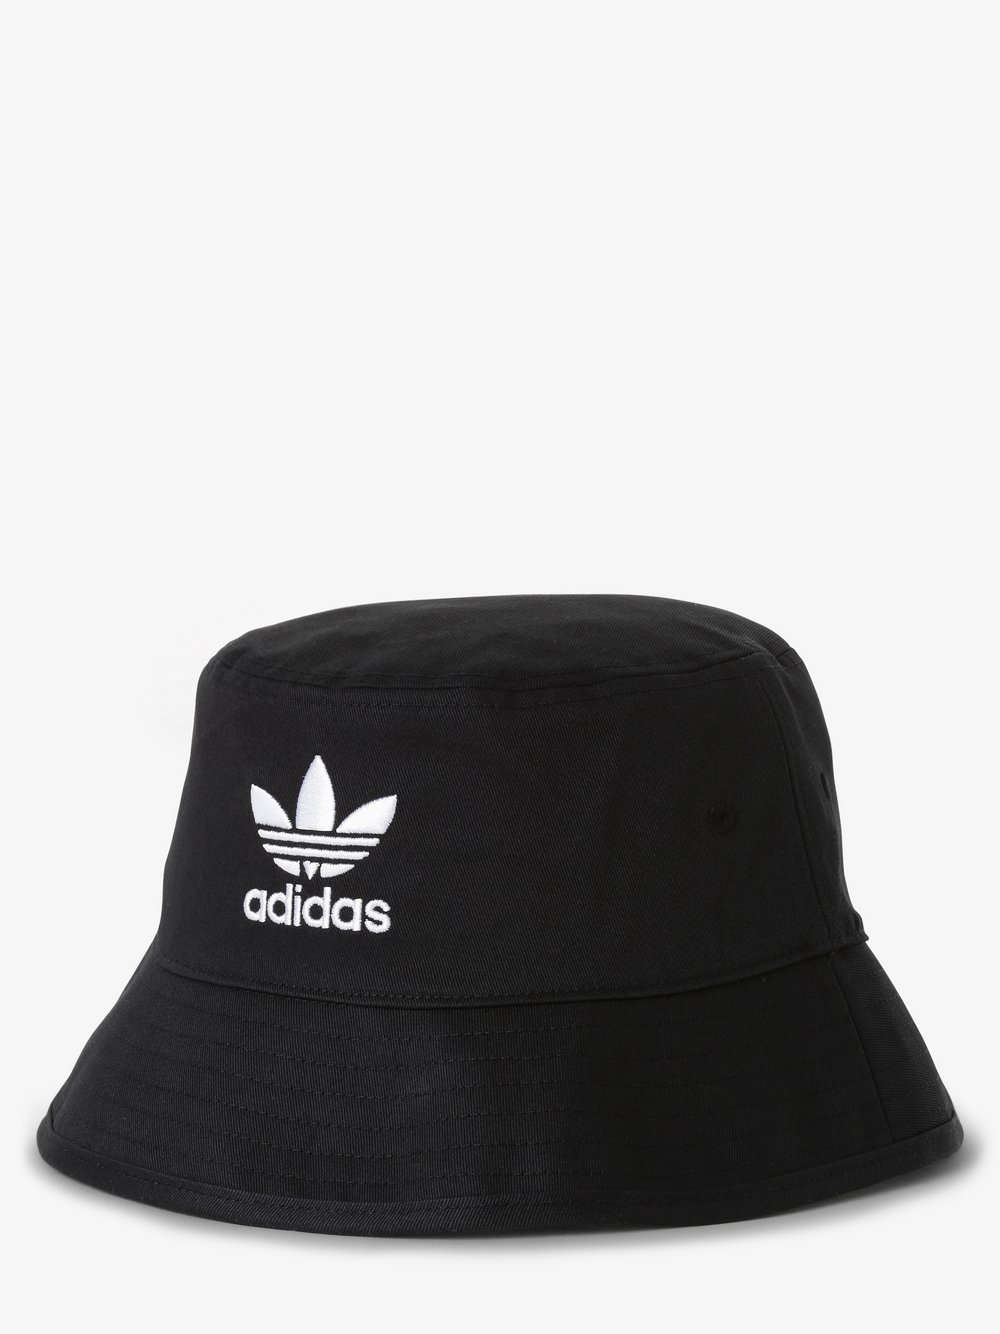 Adidas Originals - bucket hat, czarny